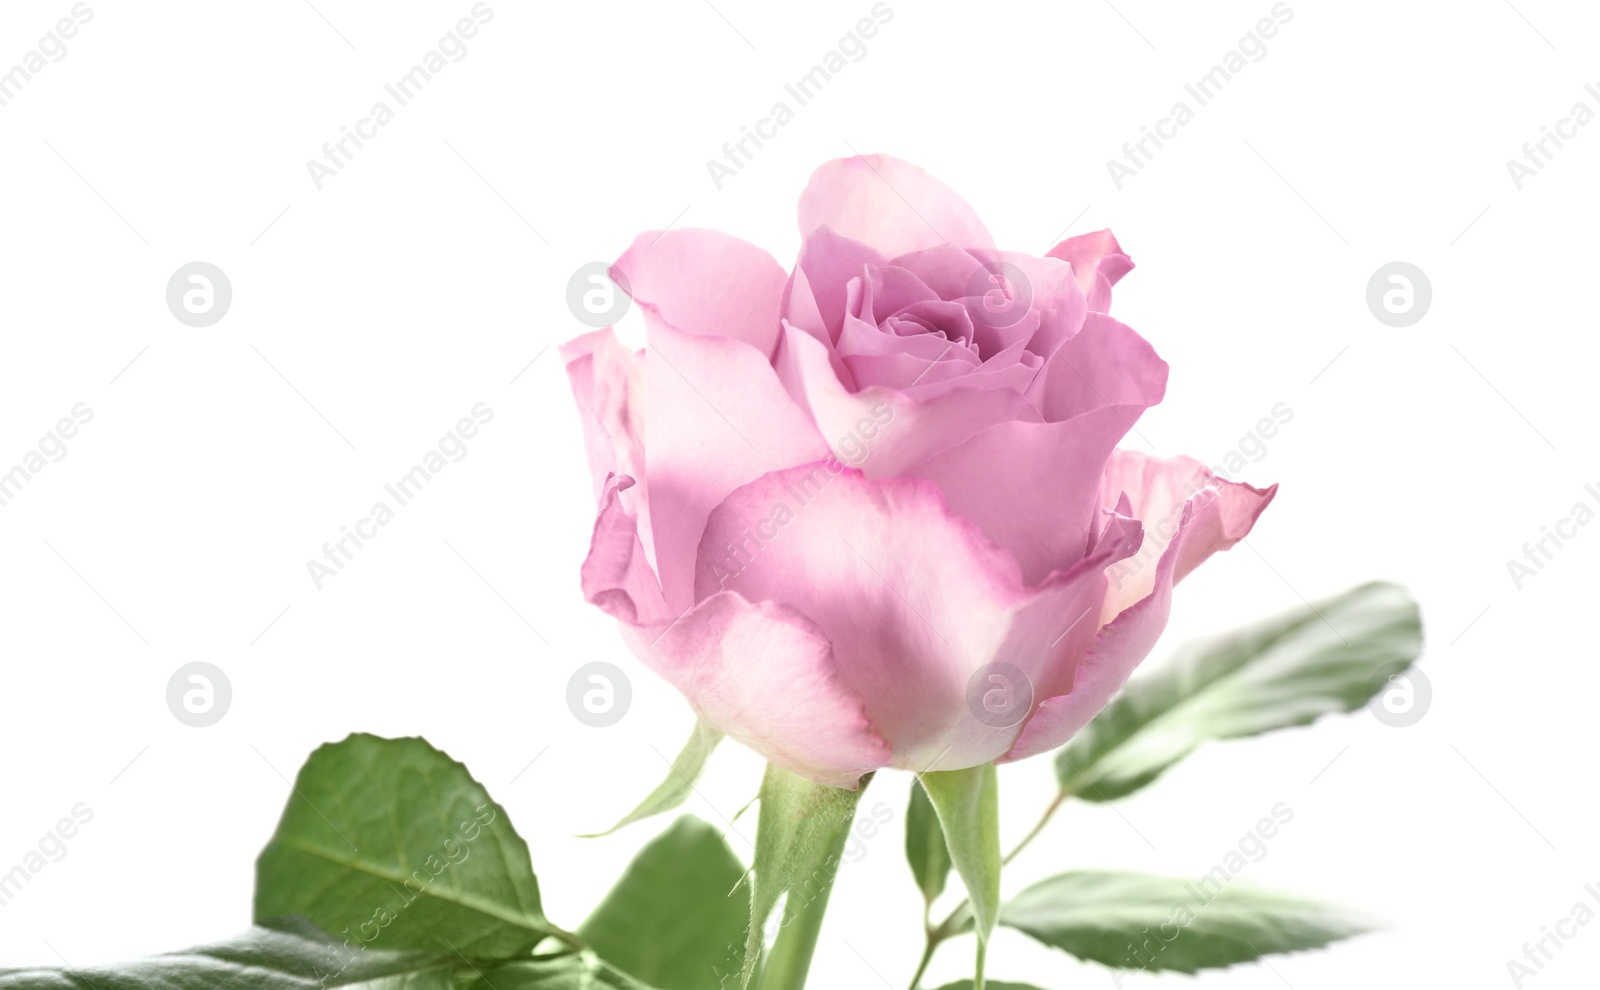 Photo of Beautiful fresh rose flower on white background